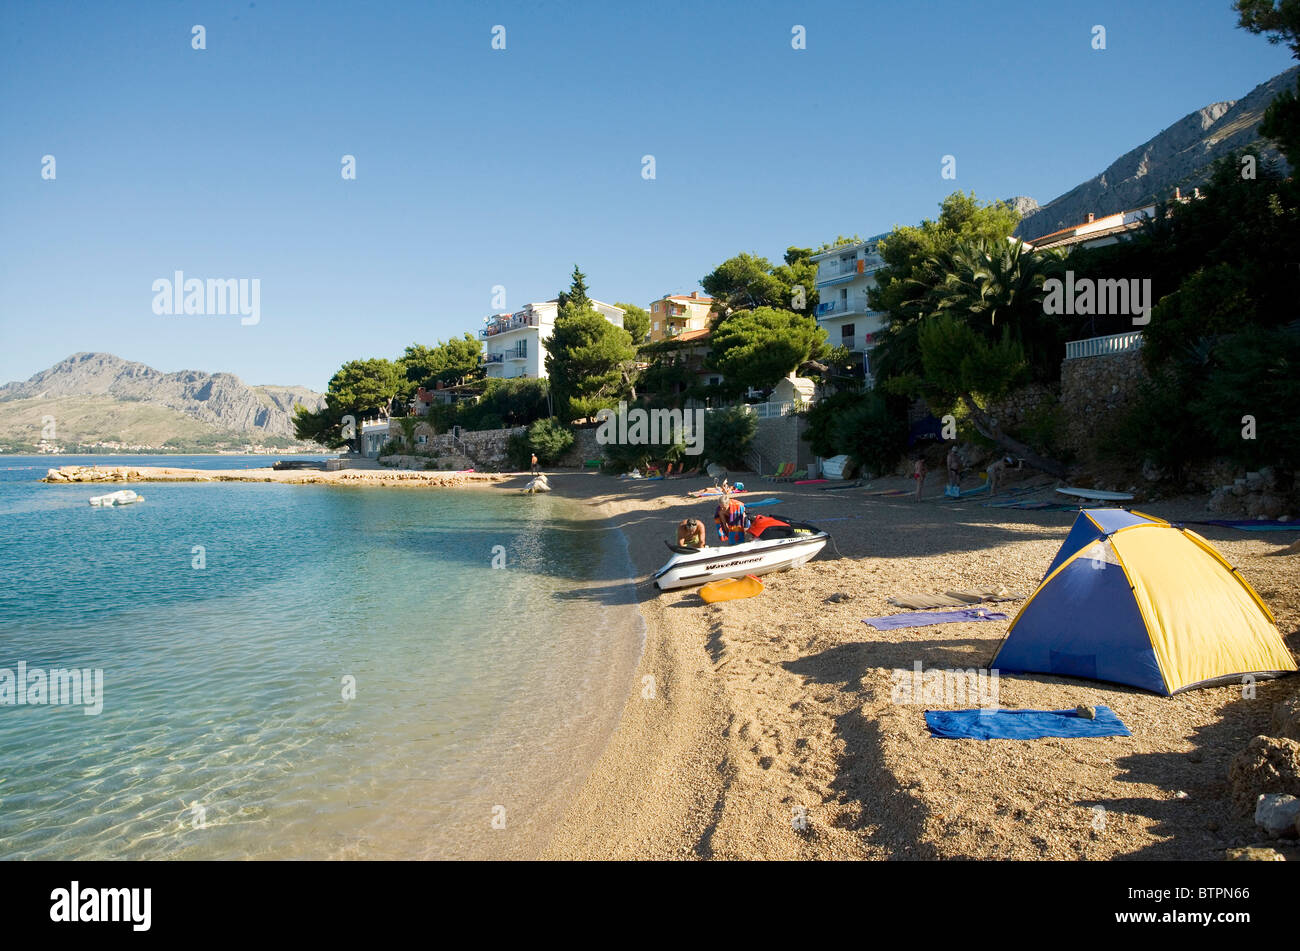 Una scena di spiaggia nei pressi della città di Omis, Croazia Foto Stock